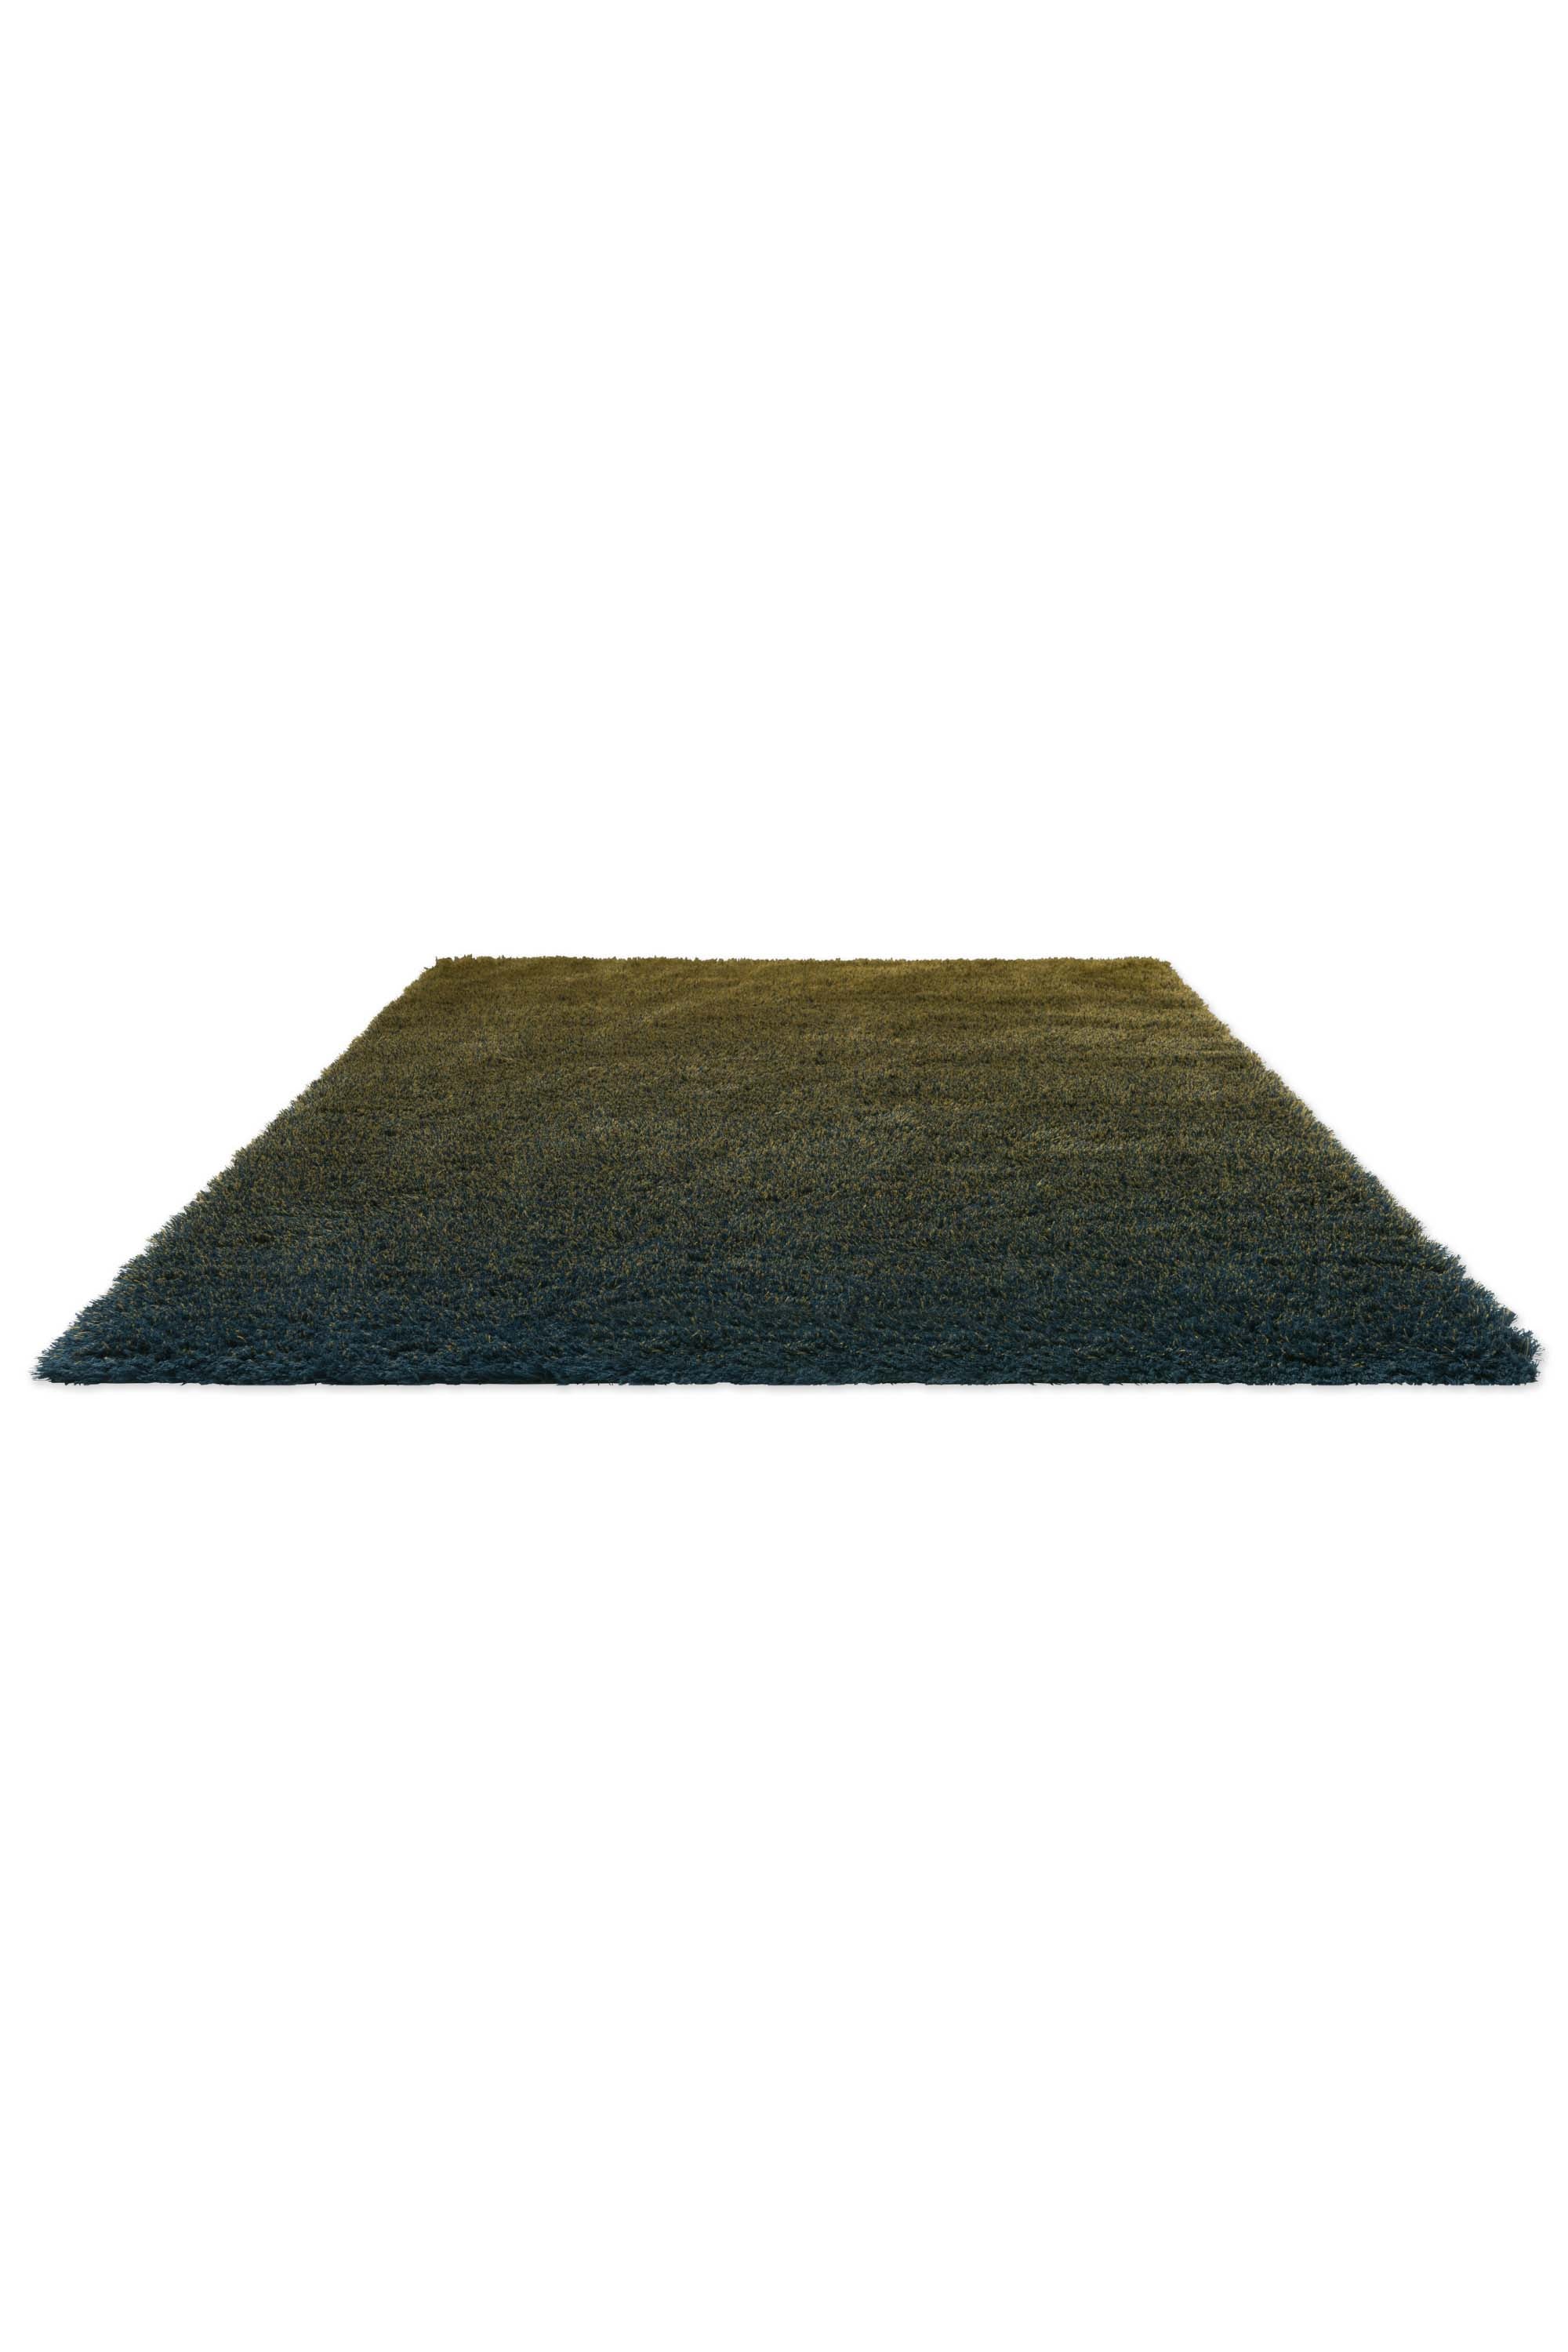 Plain green rug with shaggy pile